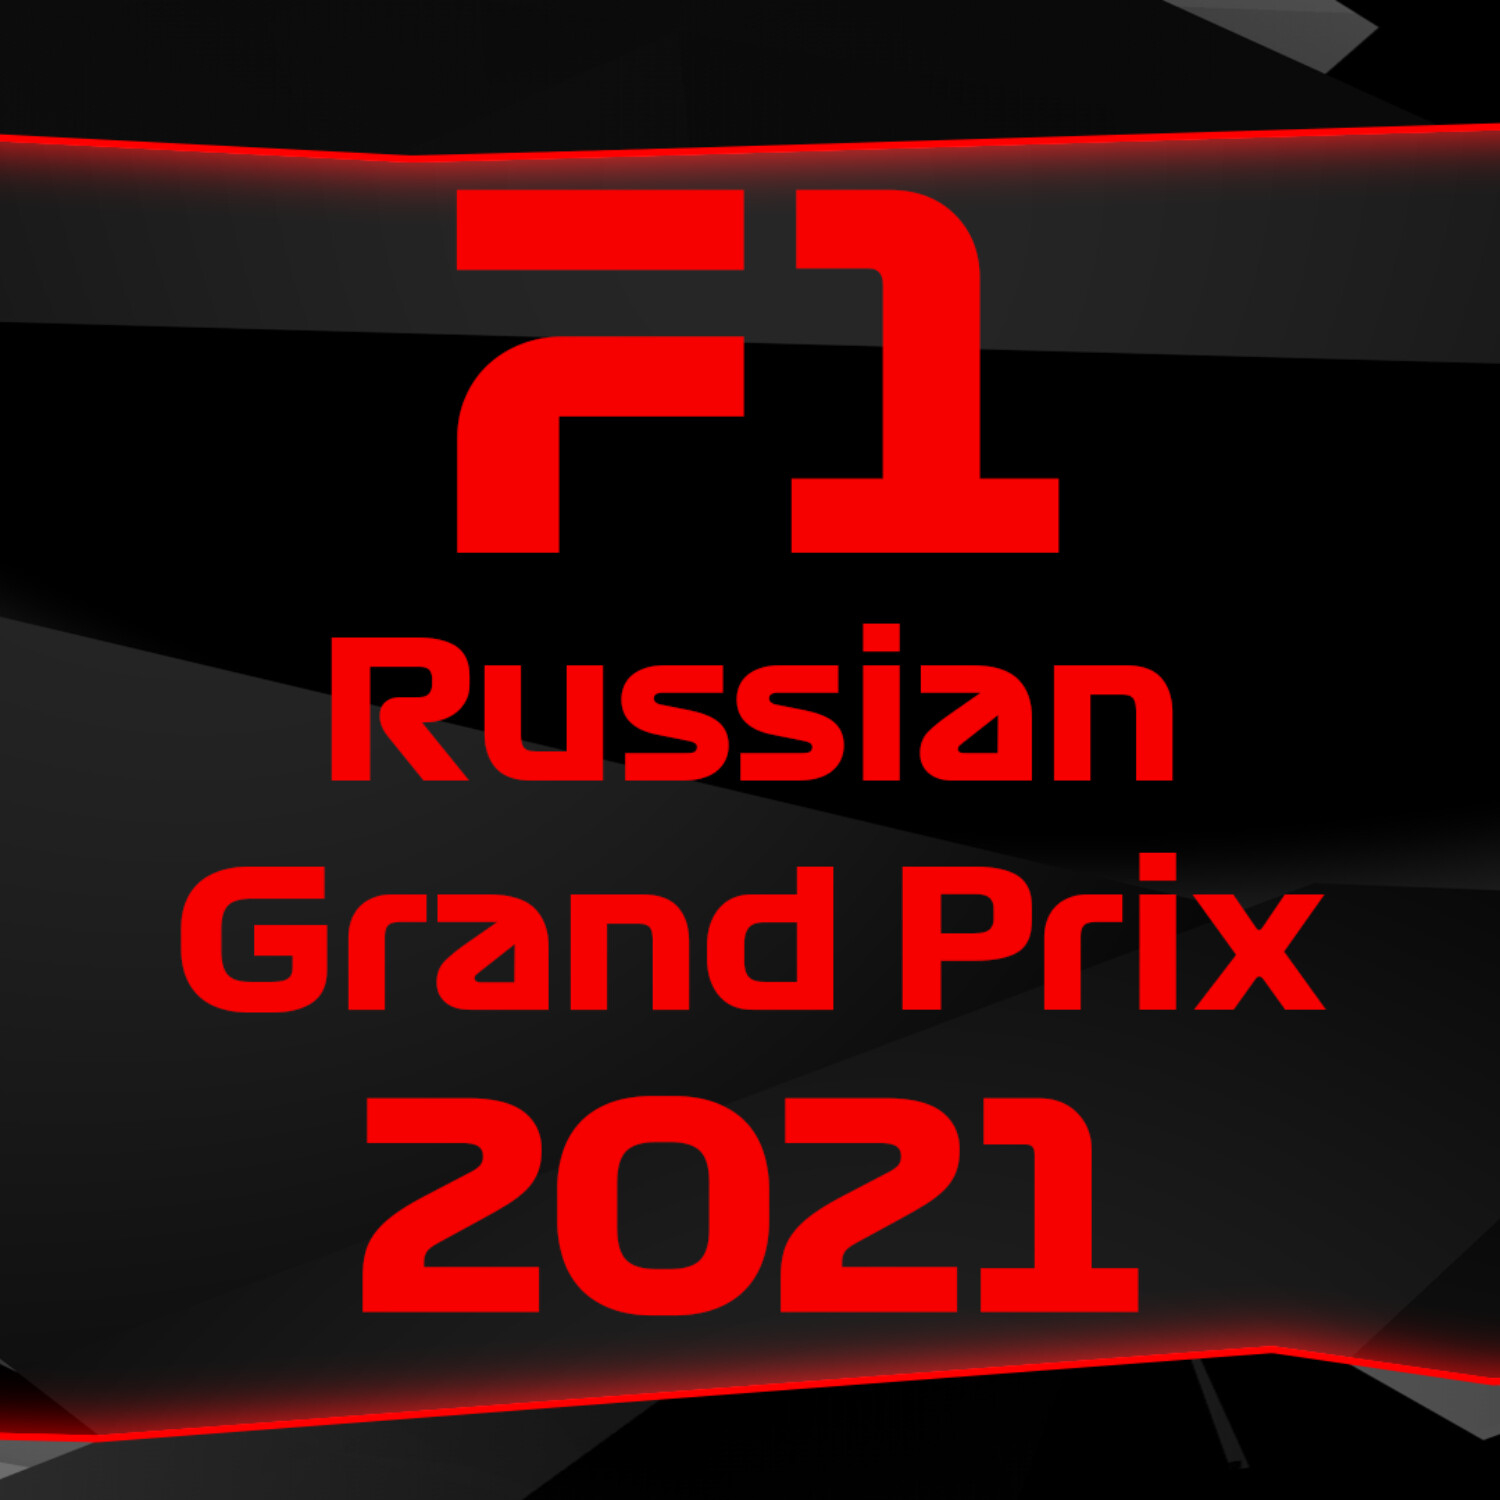 F1 Russian Grand Prix